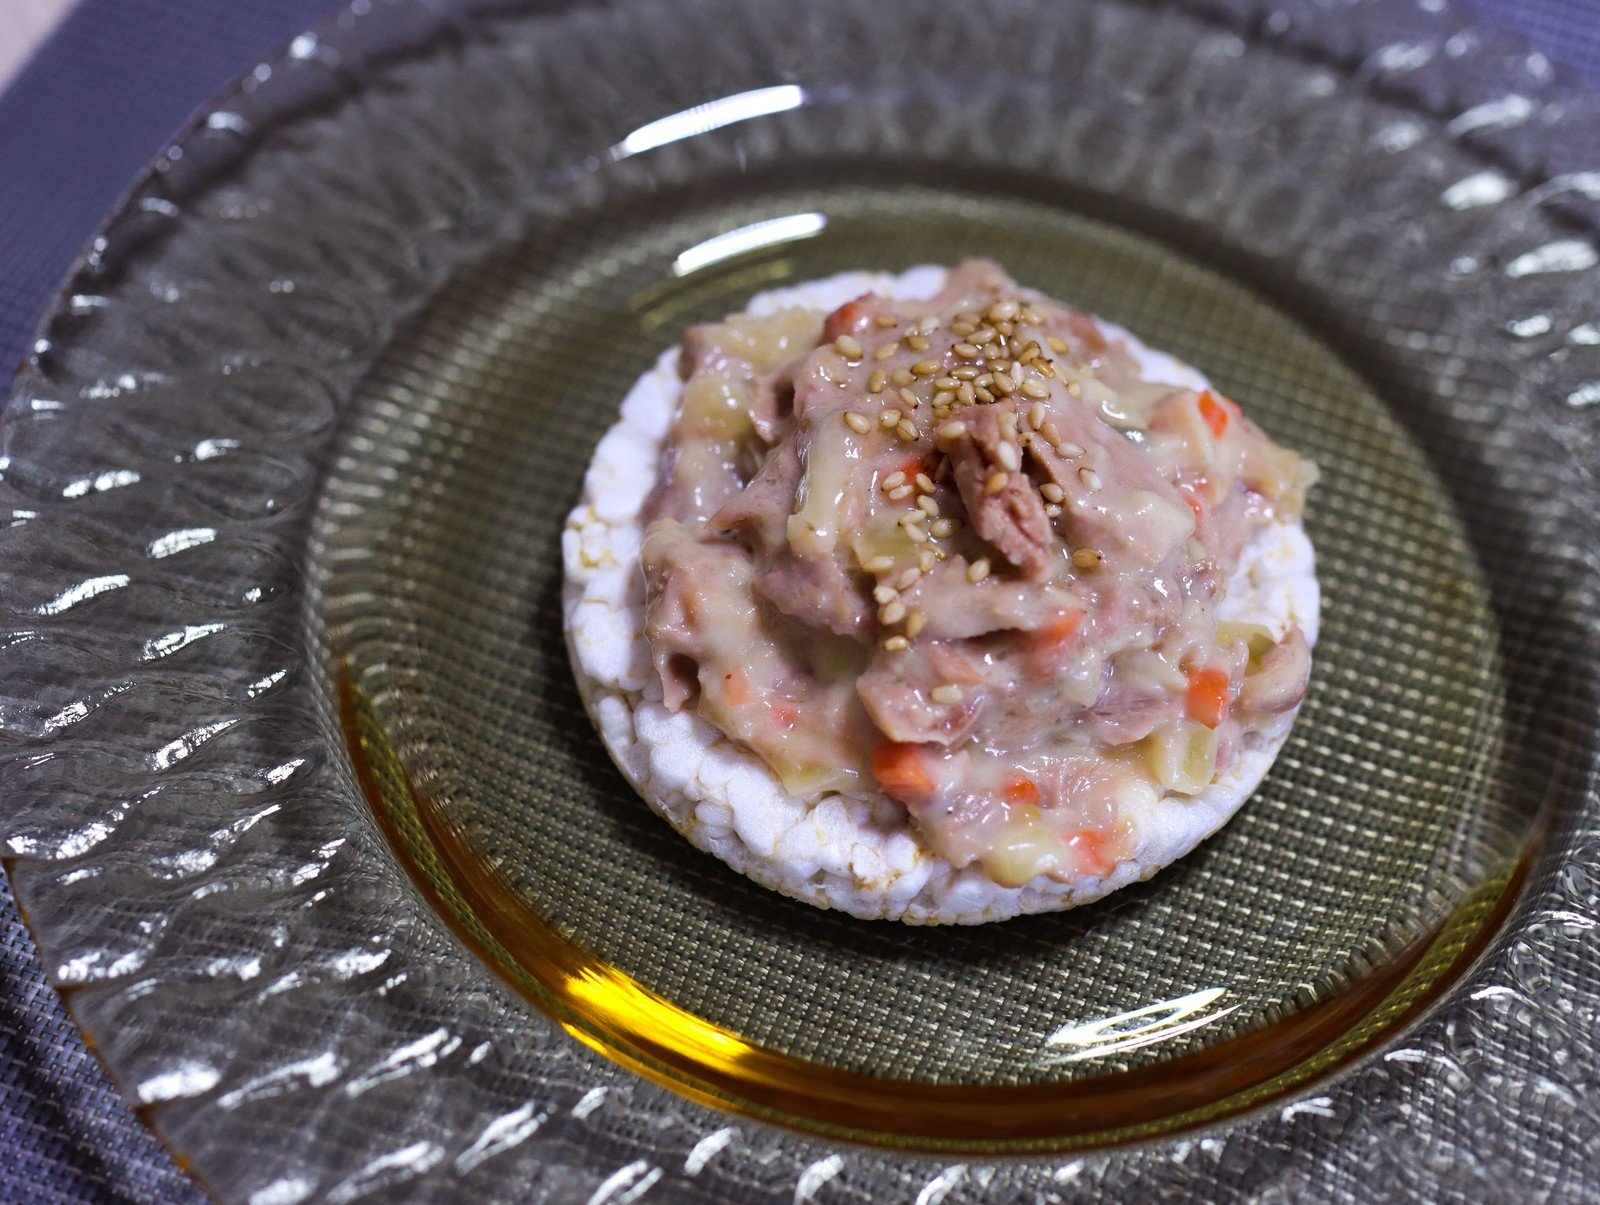 「吞拿魚沙律醬米餅」是Evelyn特意為今次活動設計的簡易食譜，只需把油浸吞拿魚和沙律醬混合，再加上芝麻點綴，配上米餅食用，簡單方便，健康美味。